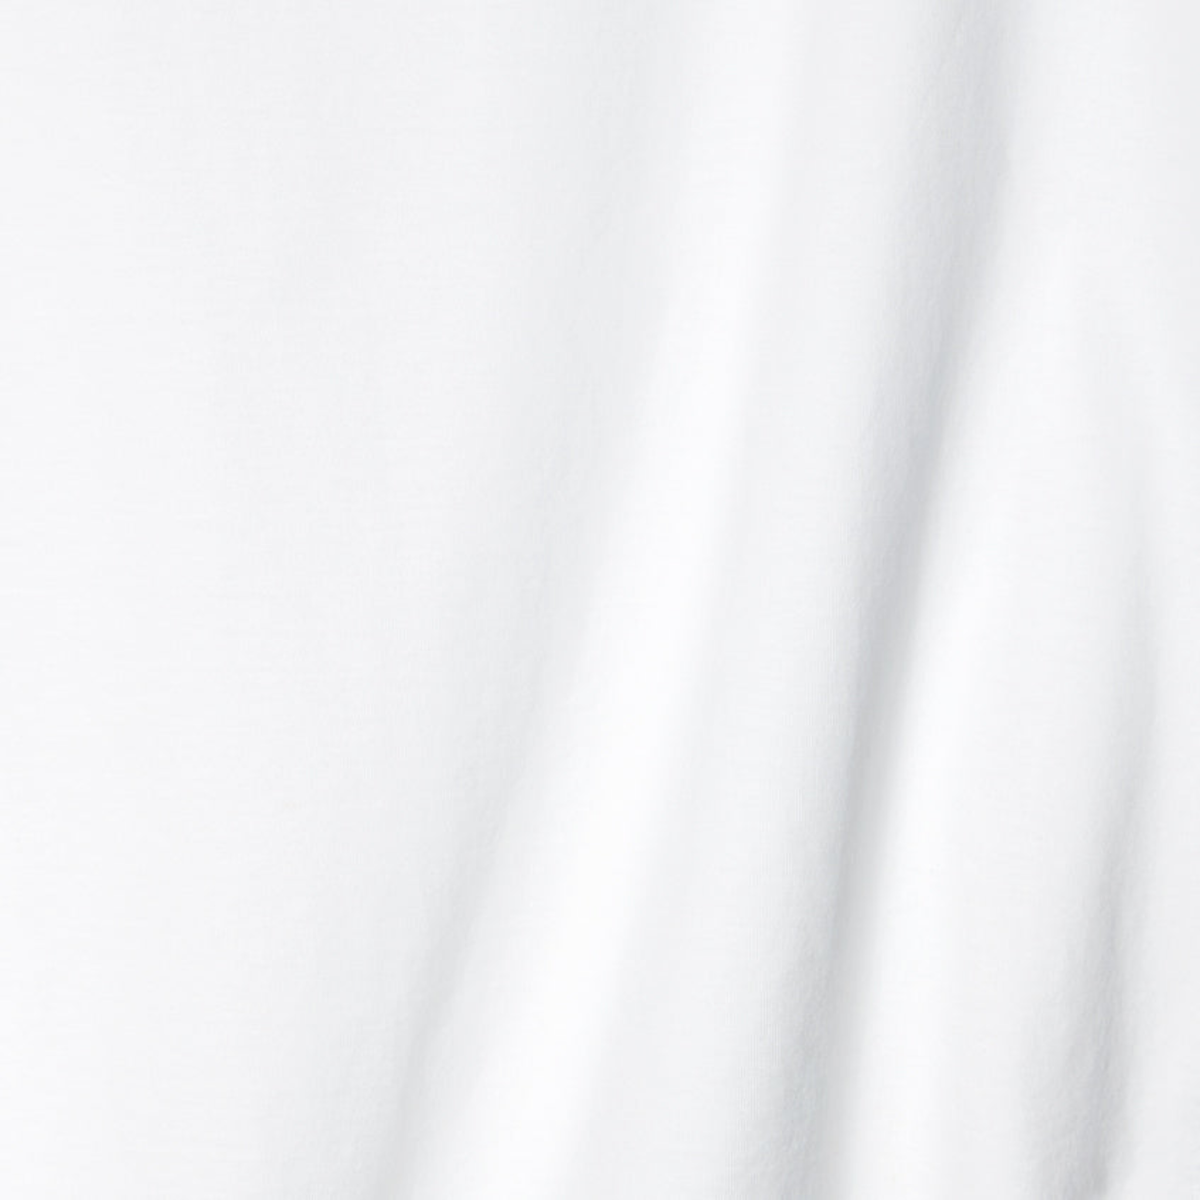 Fabric Closeup of White Sferra Caricia Pant